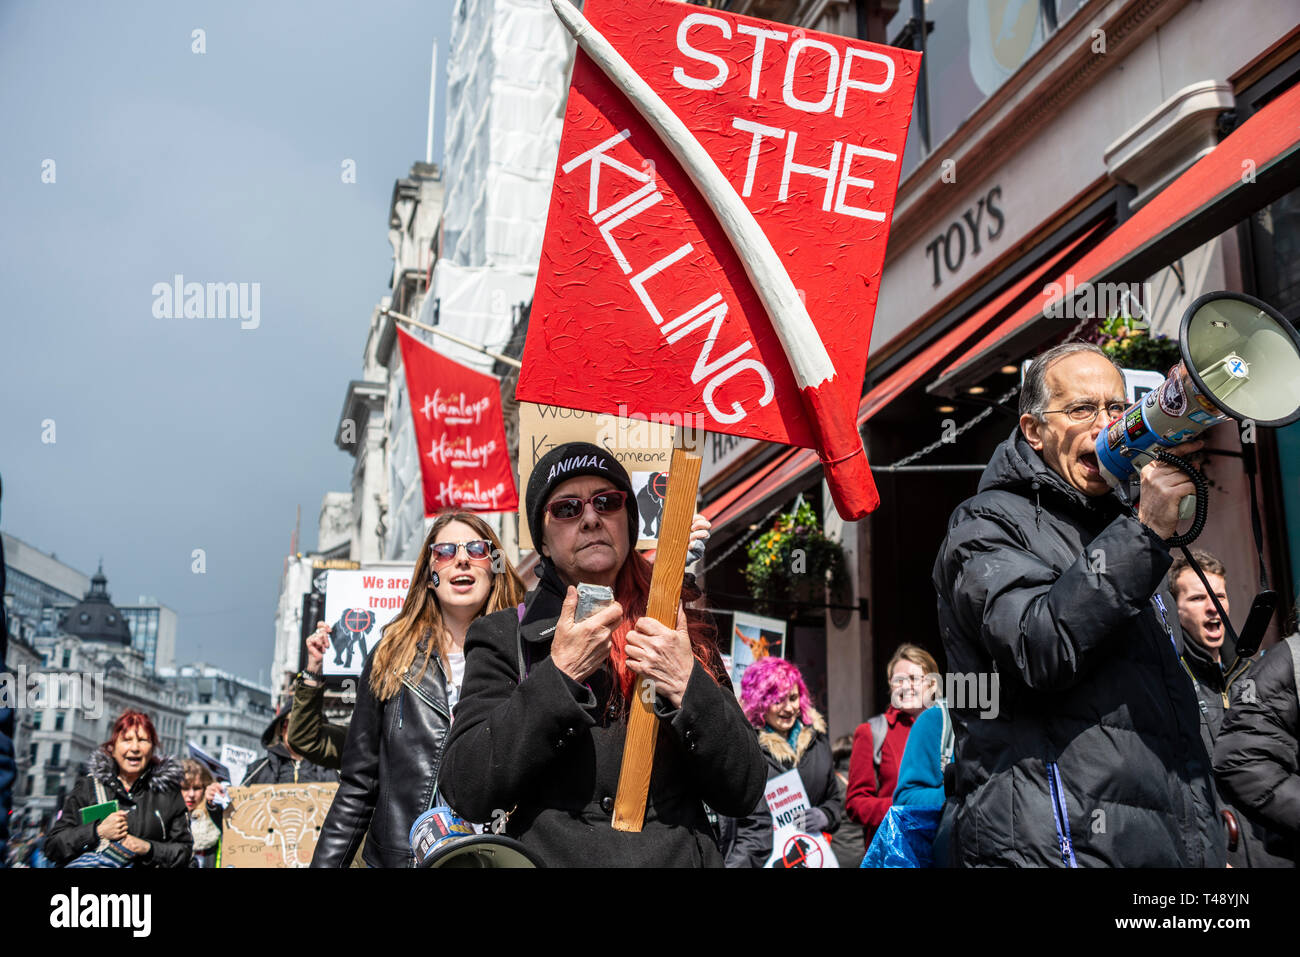 Die demonstranten an einer Haltestelle Trophäenjagd und Handel mit Elfenbein Protestkundgebung, London, UK. Elephant tusk Plakat Stockfoto